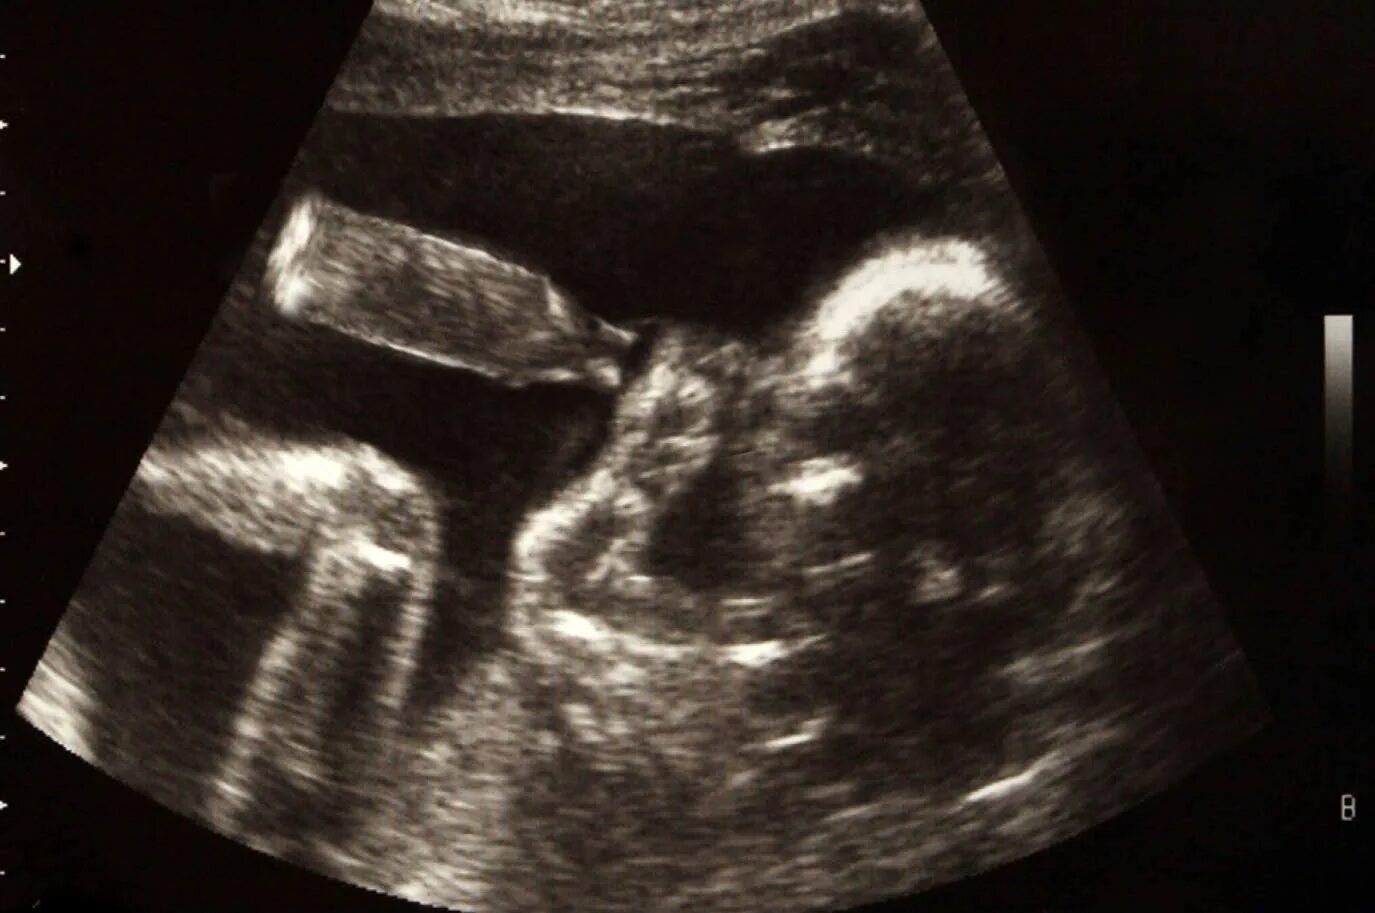 УЗИ двойни на 20 неделе беременности. УЗИ 19 недель беременности двойня. УЗИ ребенка на 20 неделе беременности фото двойня. УЗИ 15 недель беременности двойня.